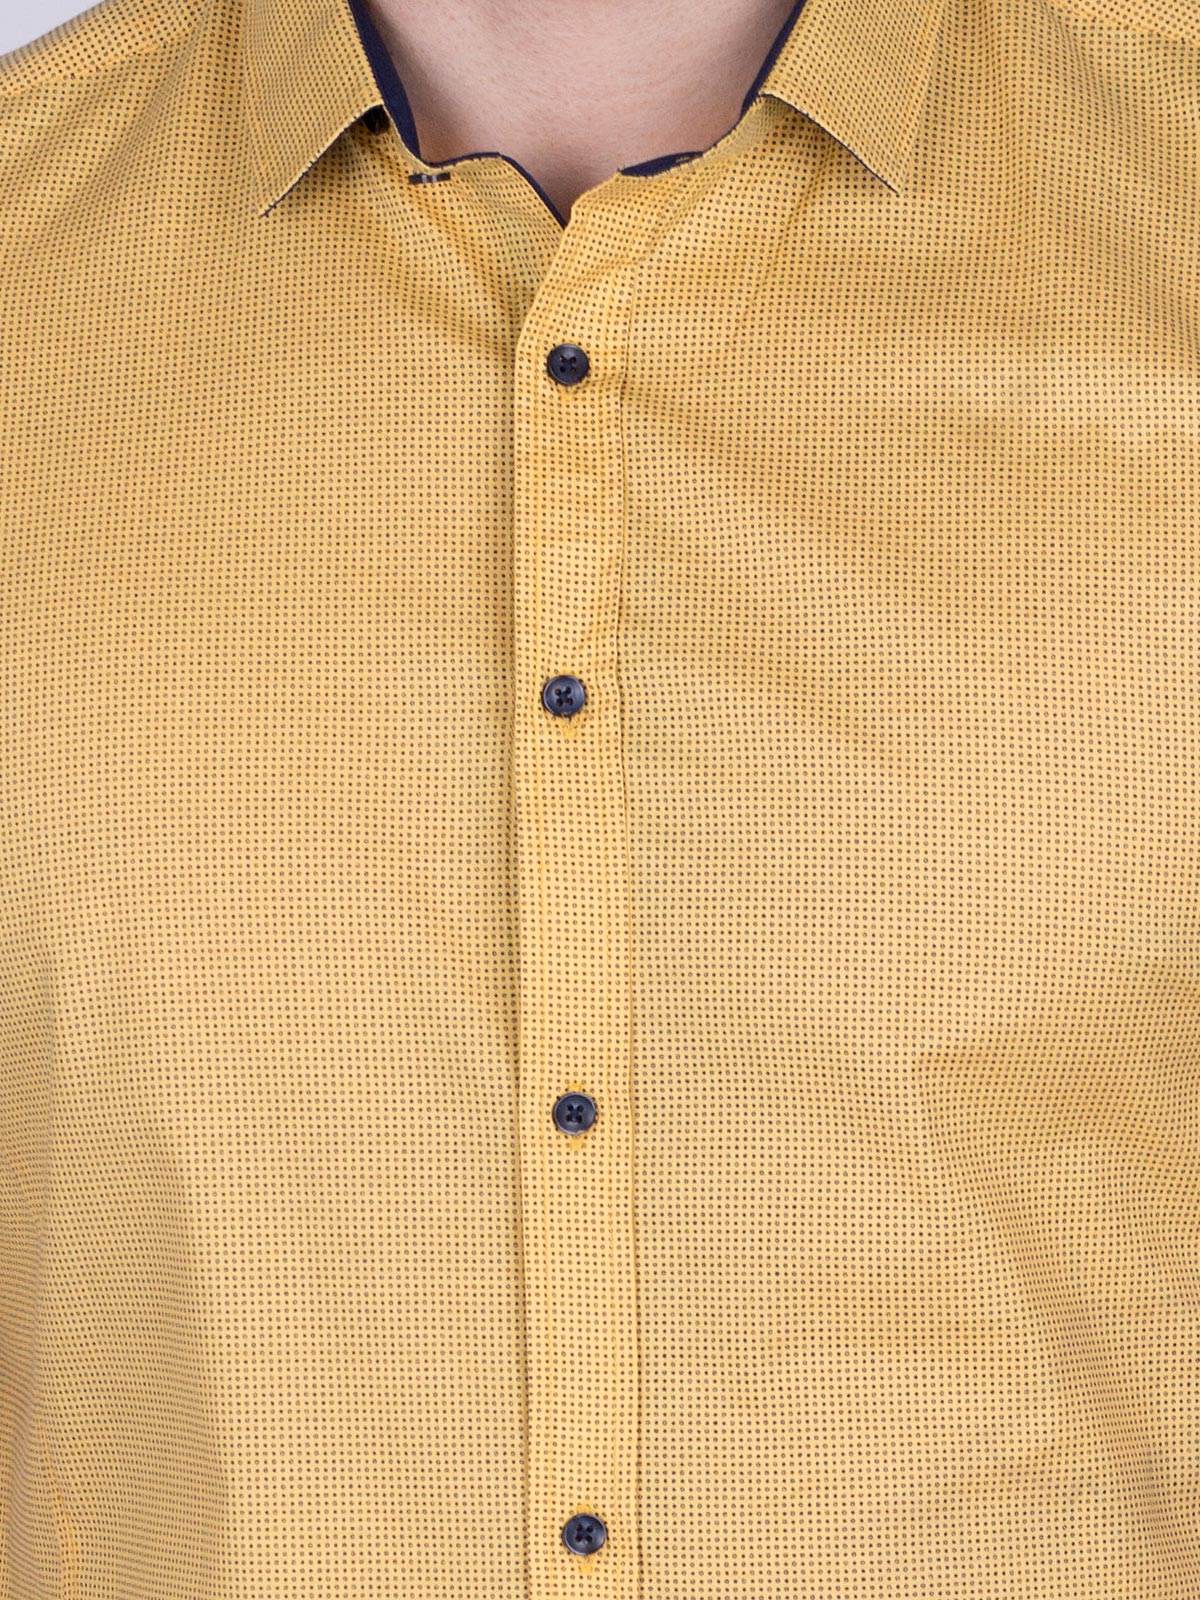 Жълта вталена риза на ситни фигури - 80200 20.00 лв img4